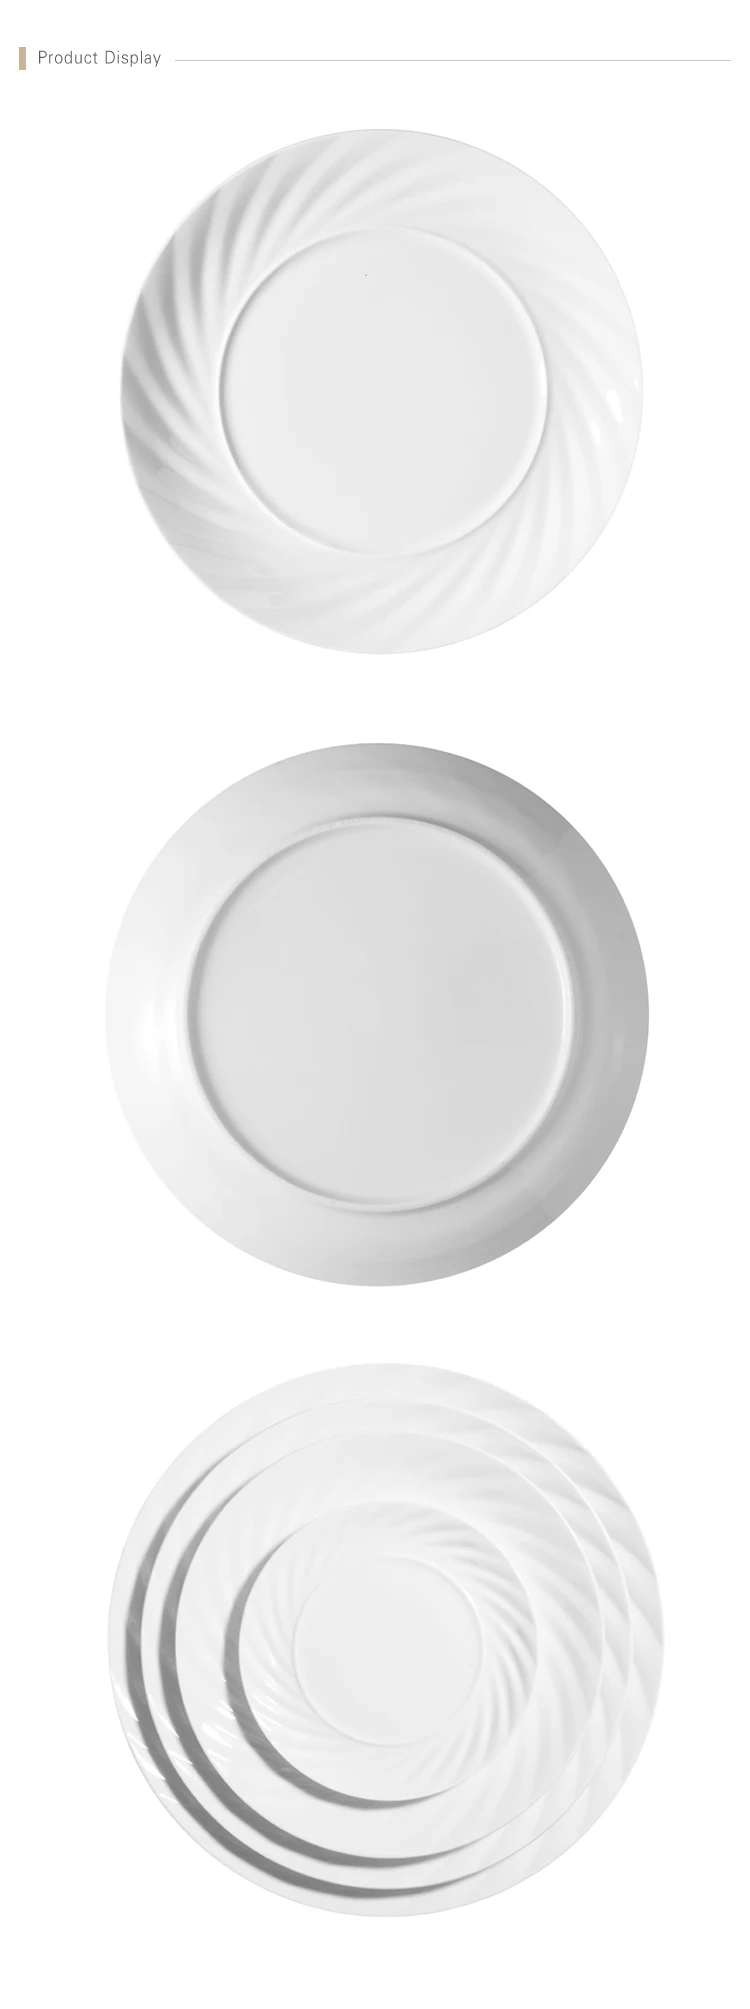 New Goods 10" Dinner Plate Set Ceramic Restaurant Plates Ceramic Dinner